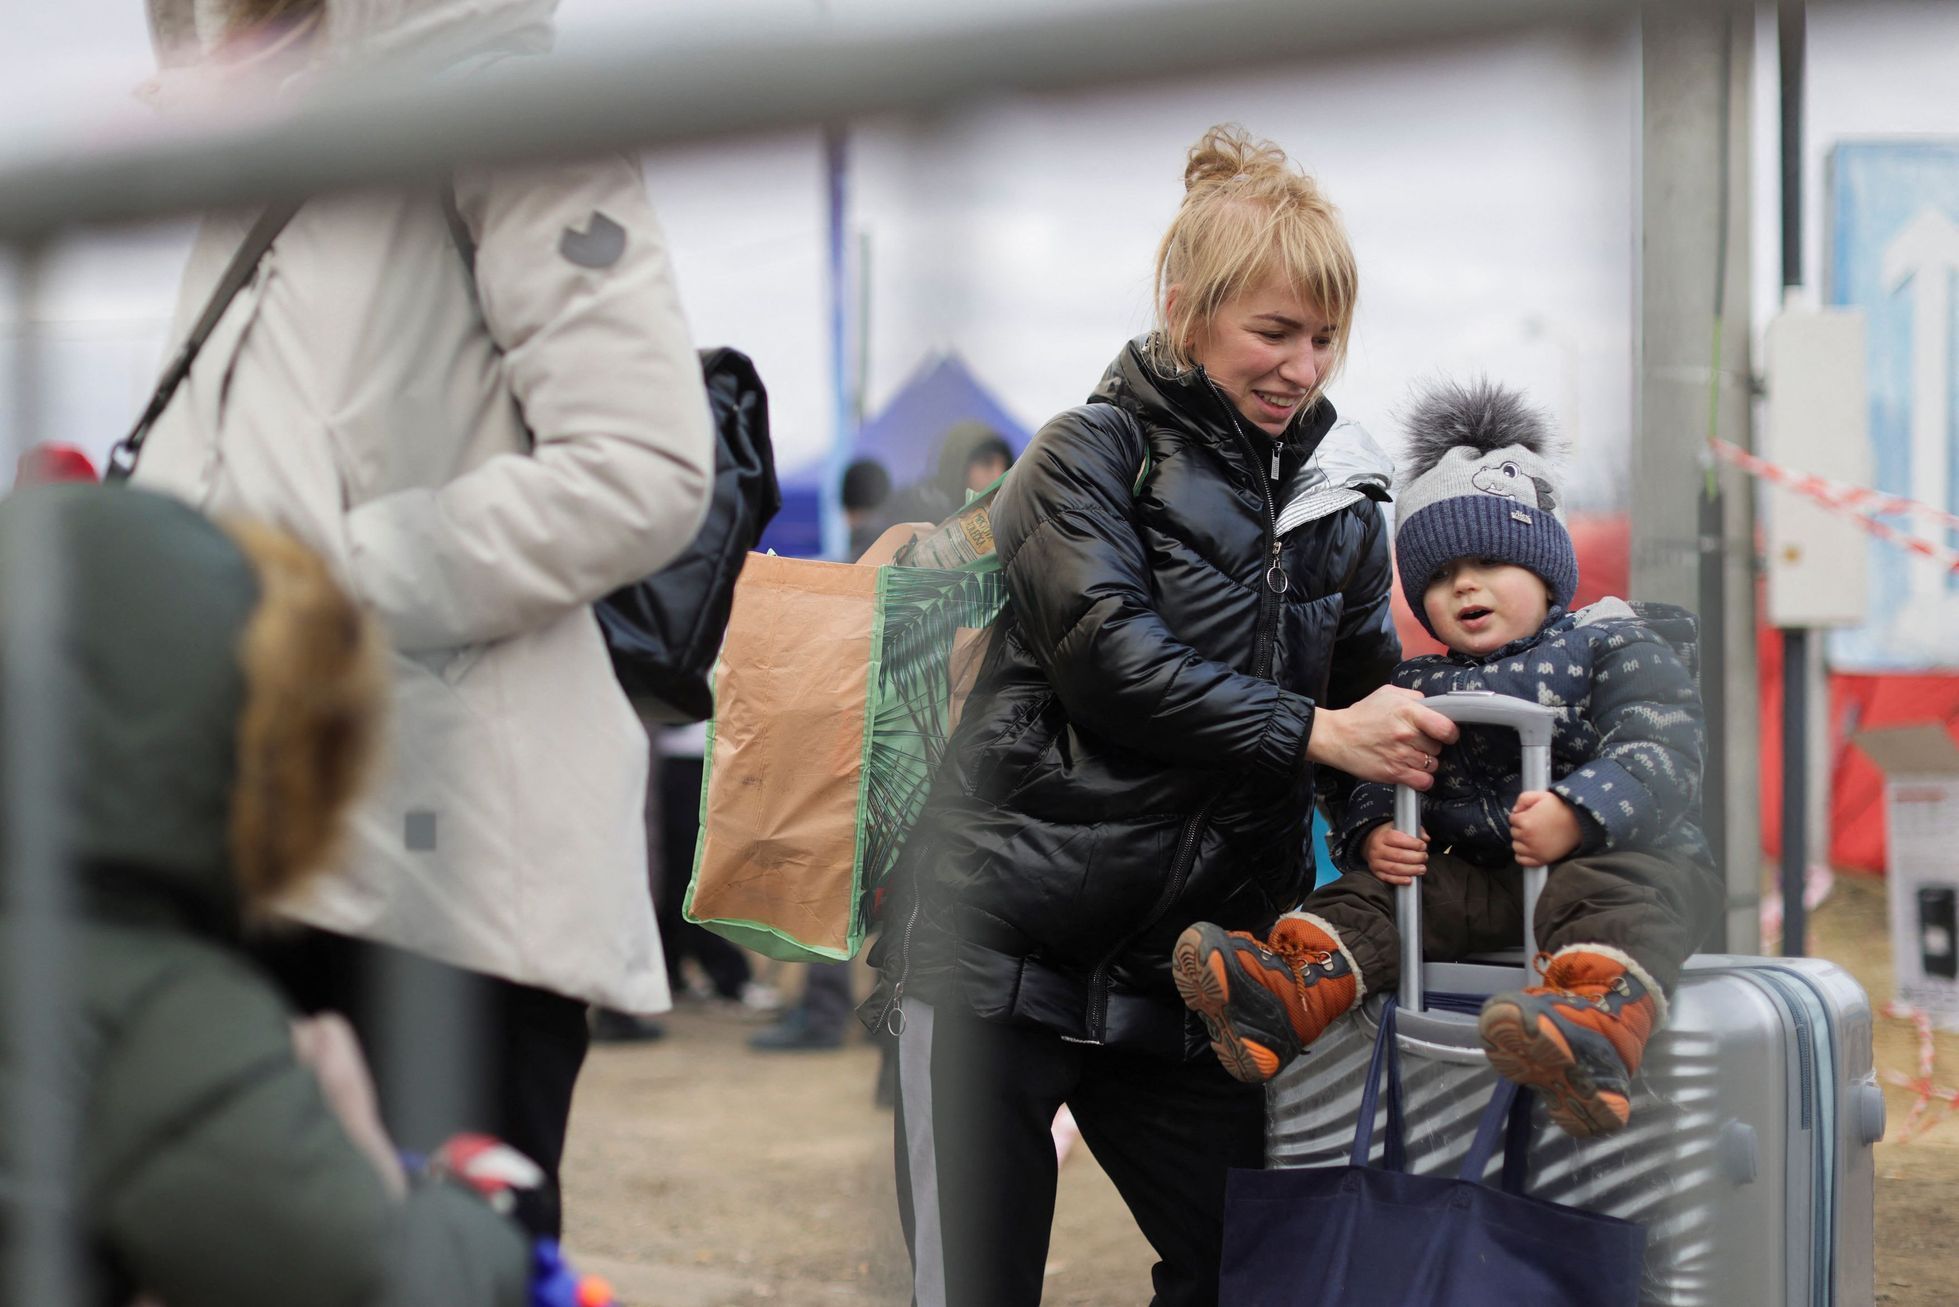 Ukrajina - uprchlíci - Vyšné Nemecké, Slovensko